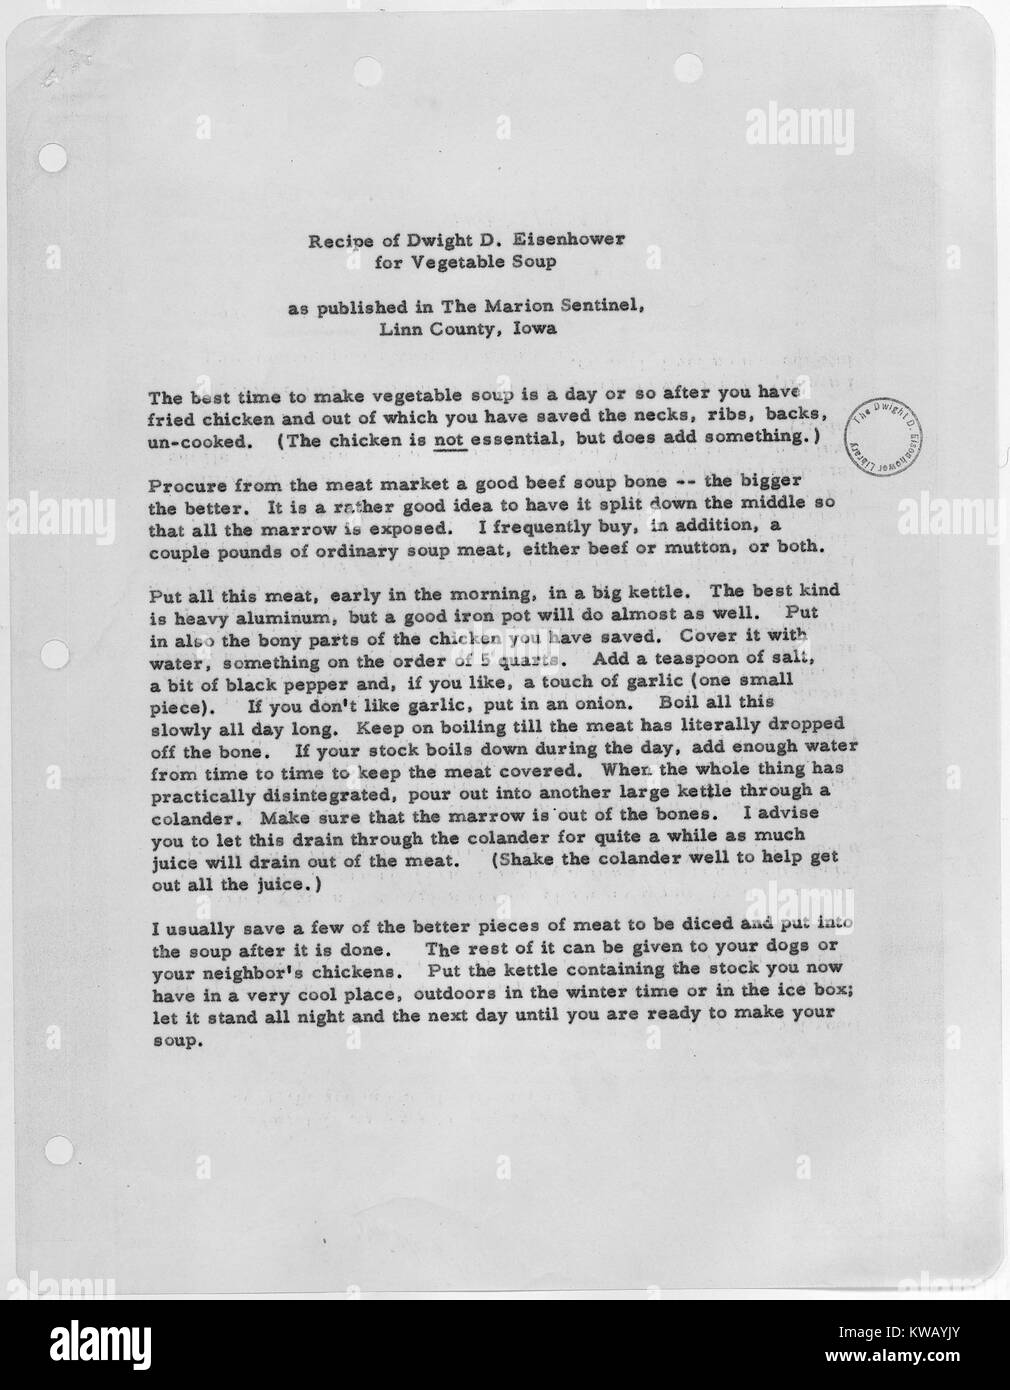 Präsident Eisenhower's Rezept für gemüsesuppe wie in der Marion Sentinel, 1953 veröffentlicht. Stockfoto